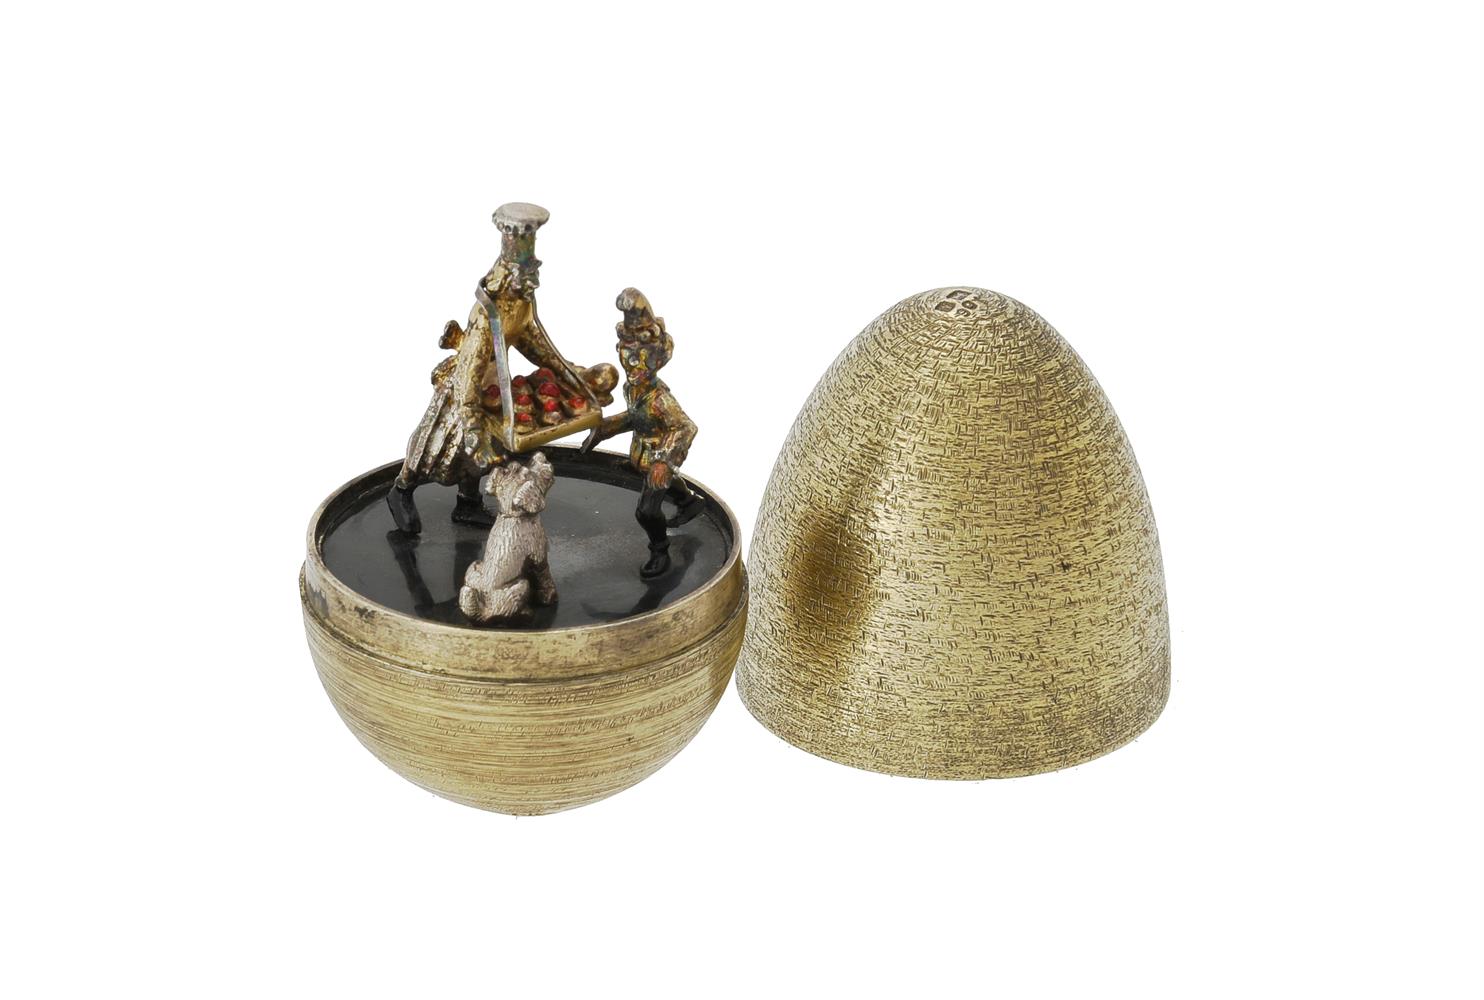 A silver gilt and enamel surprise egg by Stuart Devlin